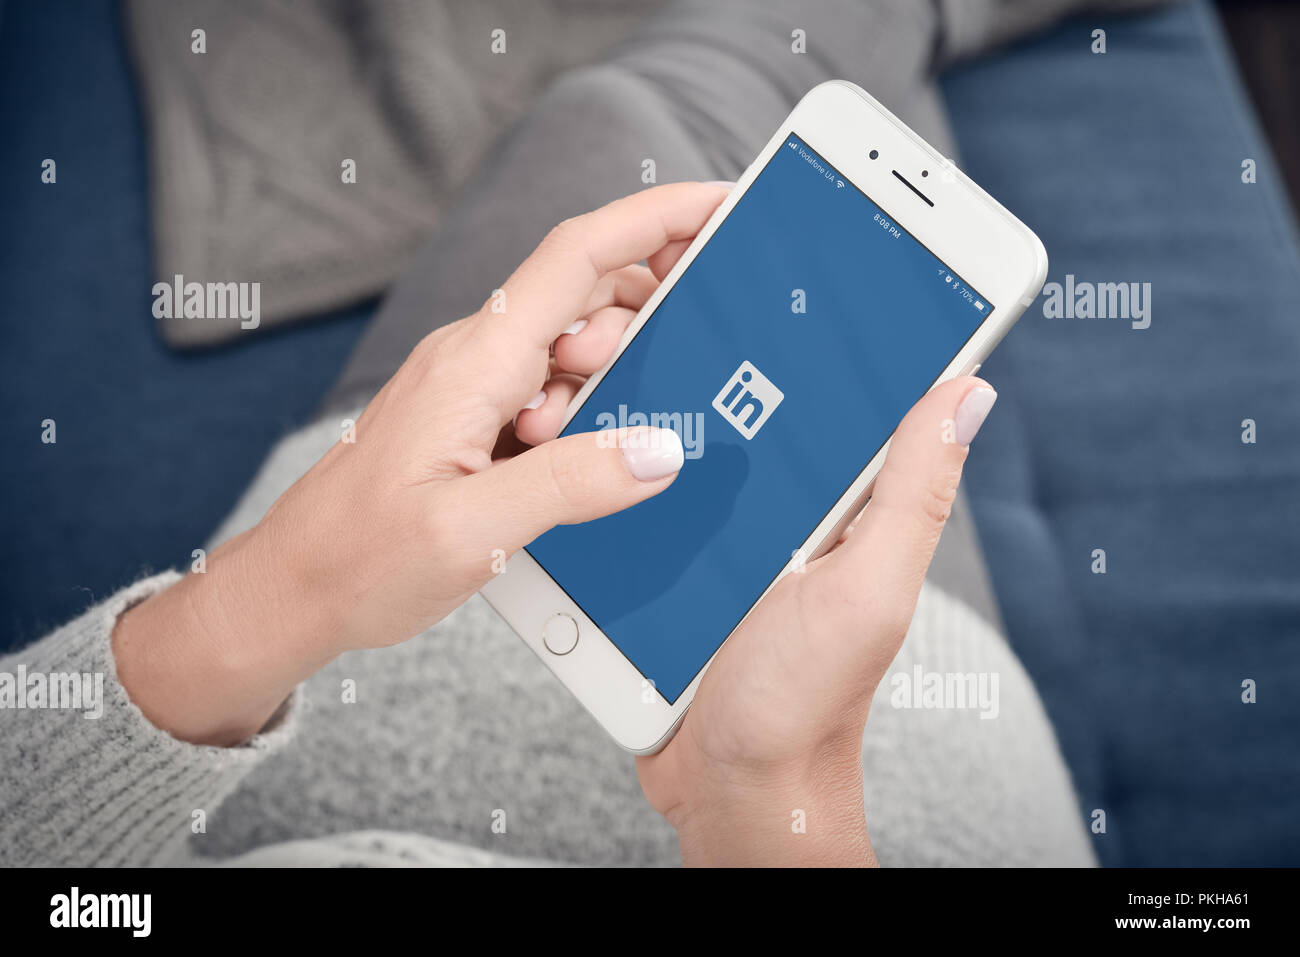 Kiew, Ukraine - Januar 24, 2018: LinkedIn Anwendung auf dem Bildschirm des Apple Iphone 8 plus. LinkedIn ist ein business-orientierten social networking Servic Stockfoto